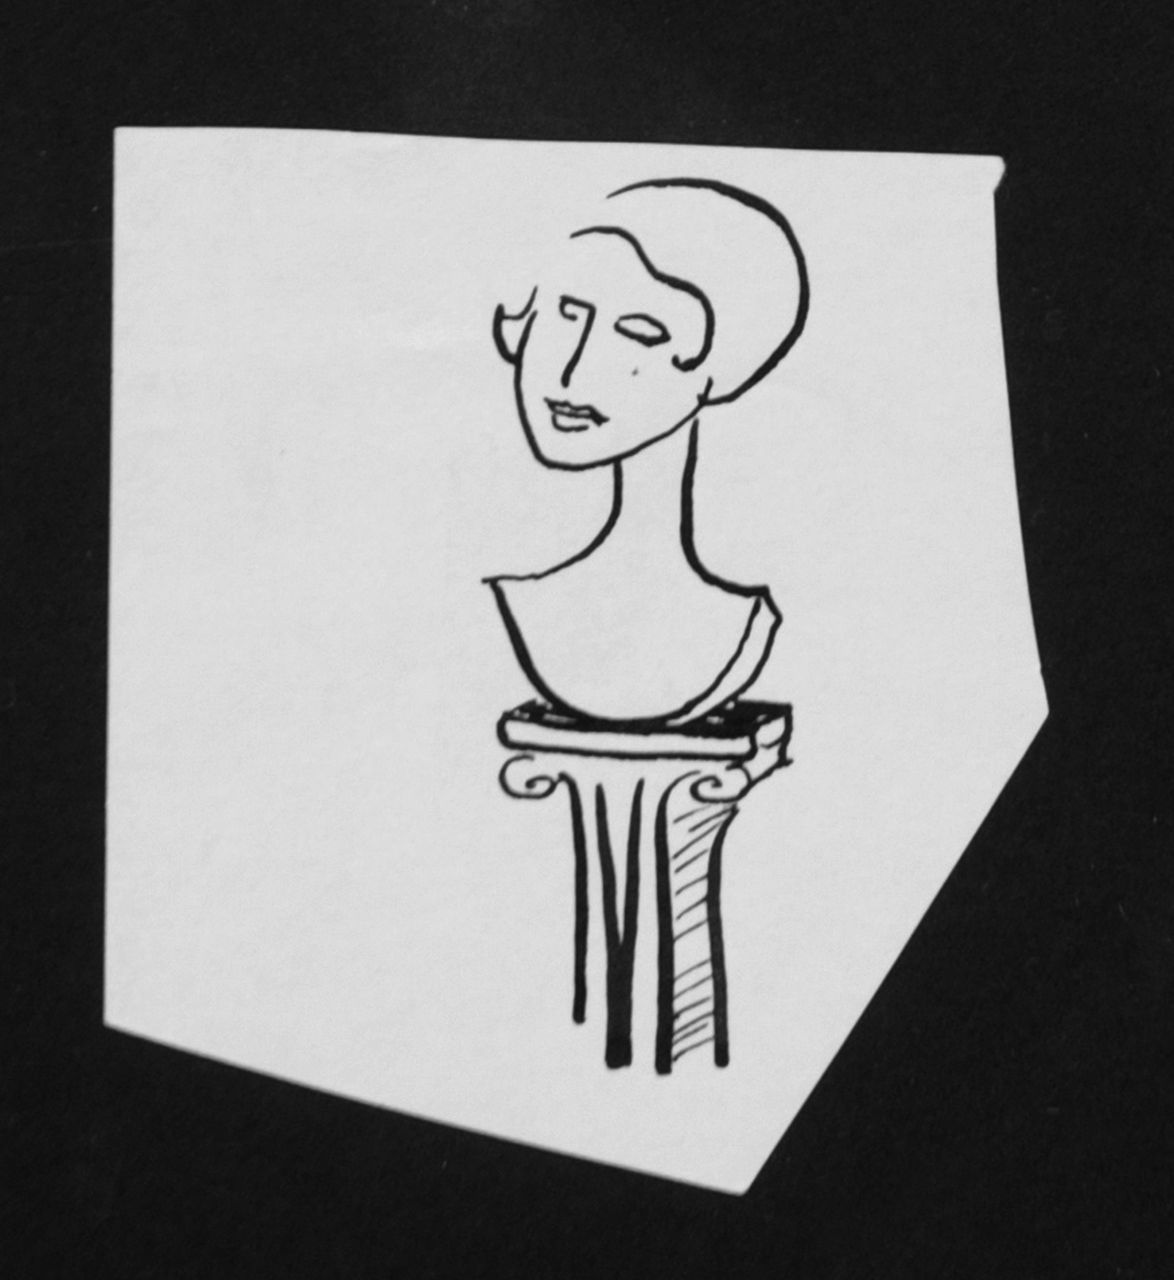 Oranje-Nassau (Prinses Beatrix) B.W.A. van | Beatrix Wilhelmina Armgard van Oranje-Nassau (Prinses Beatrix), Sculpture, Bleistift und Ausziehtusche auf Papier 8,2 x 7,5 cm, executed August 1960